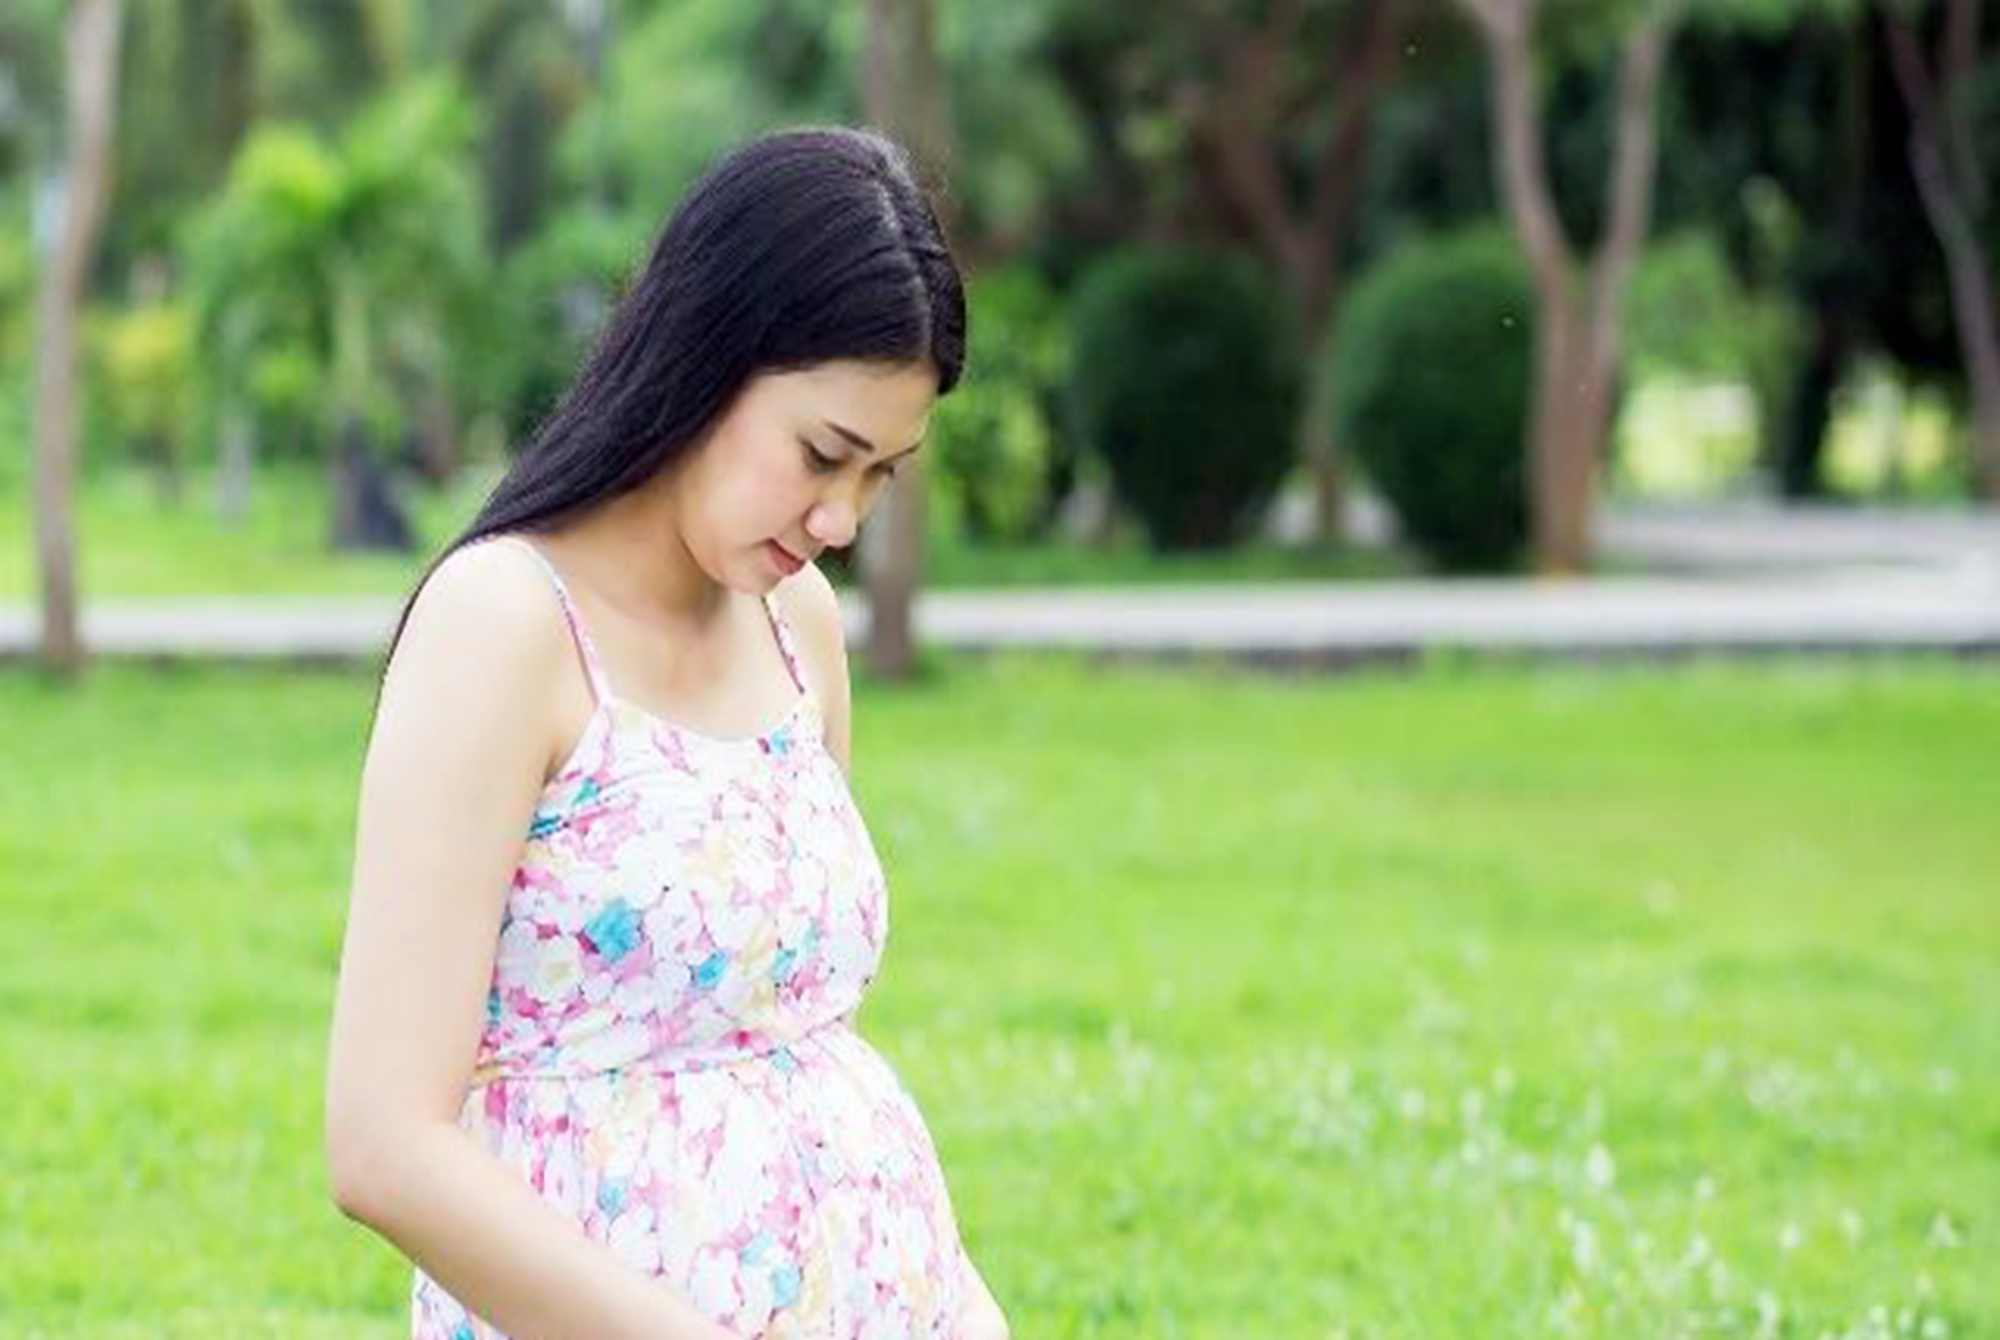 孕晚期疲惫感增重 胎心监护检测能及时掌握胎儿情况